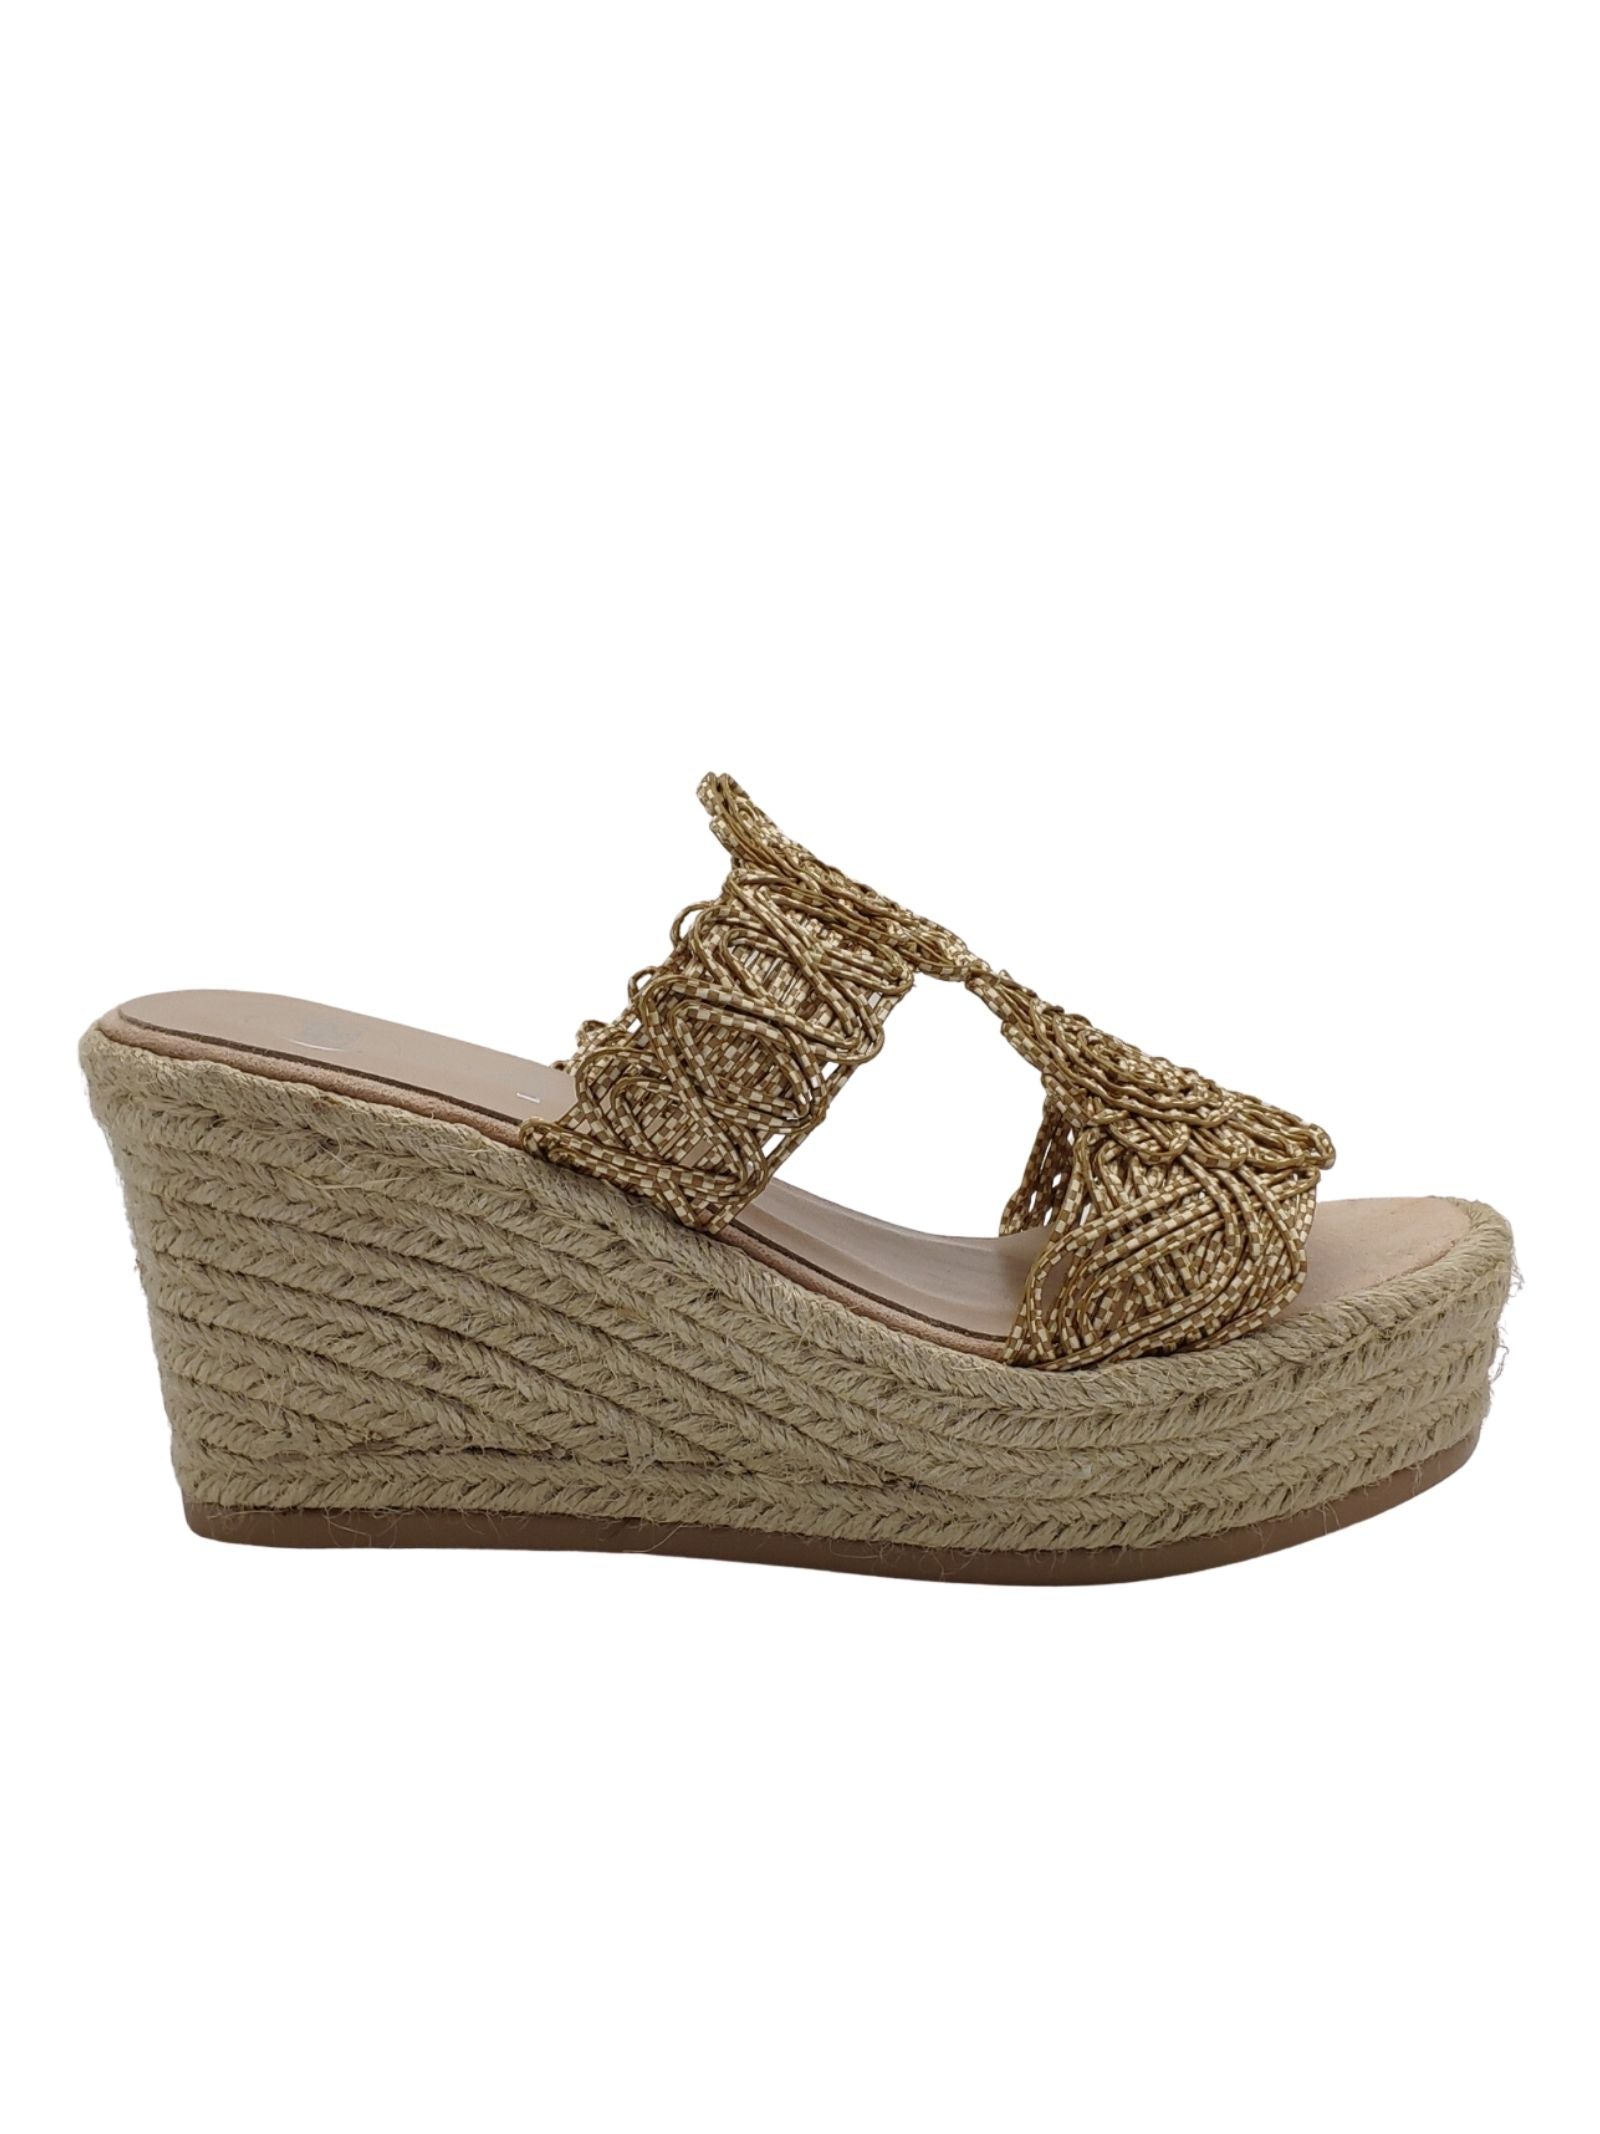 Chaussures pour femmes Sandales en tissu beige avec talon compensé en corde haute